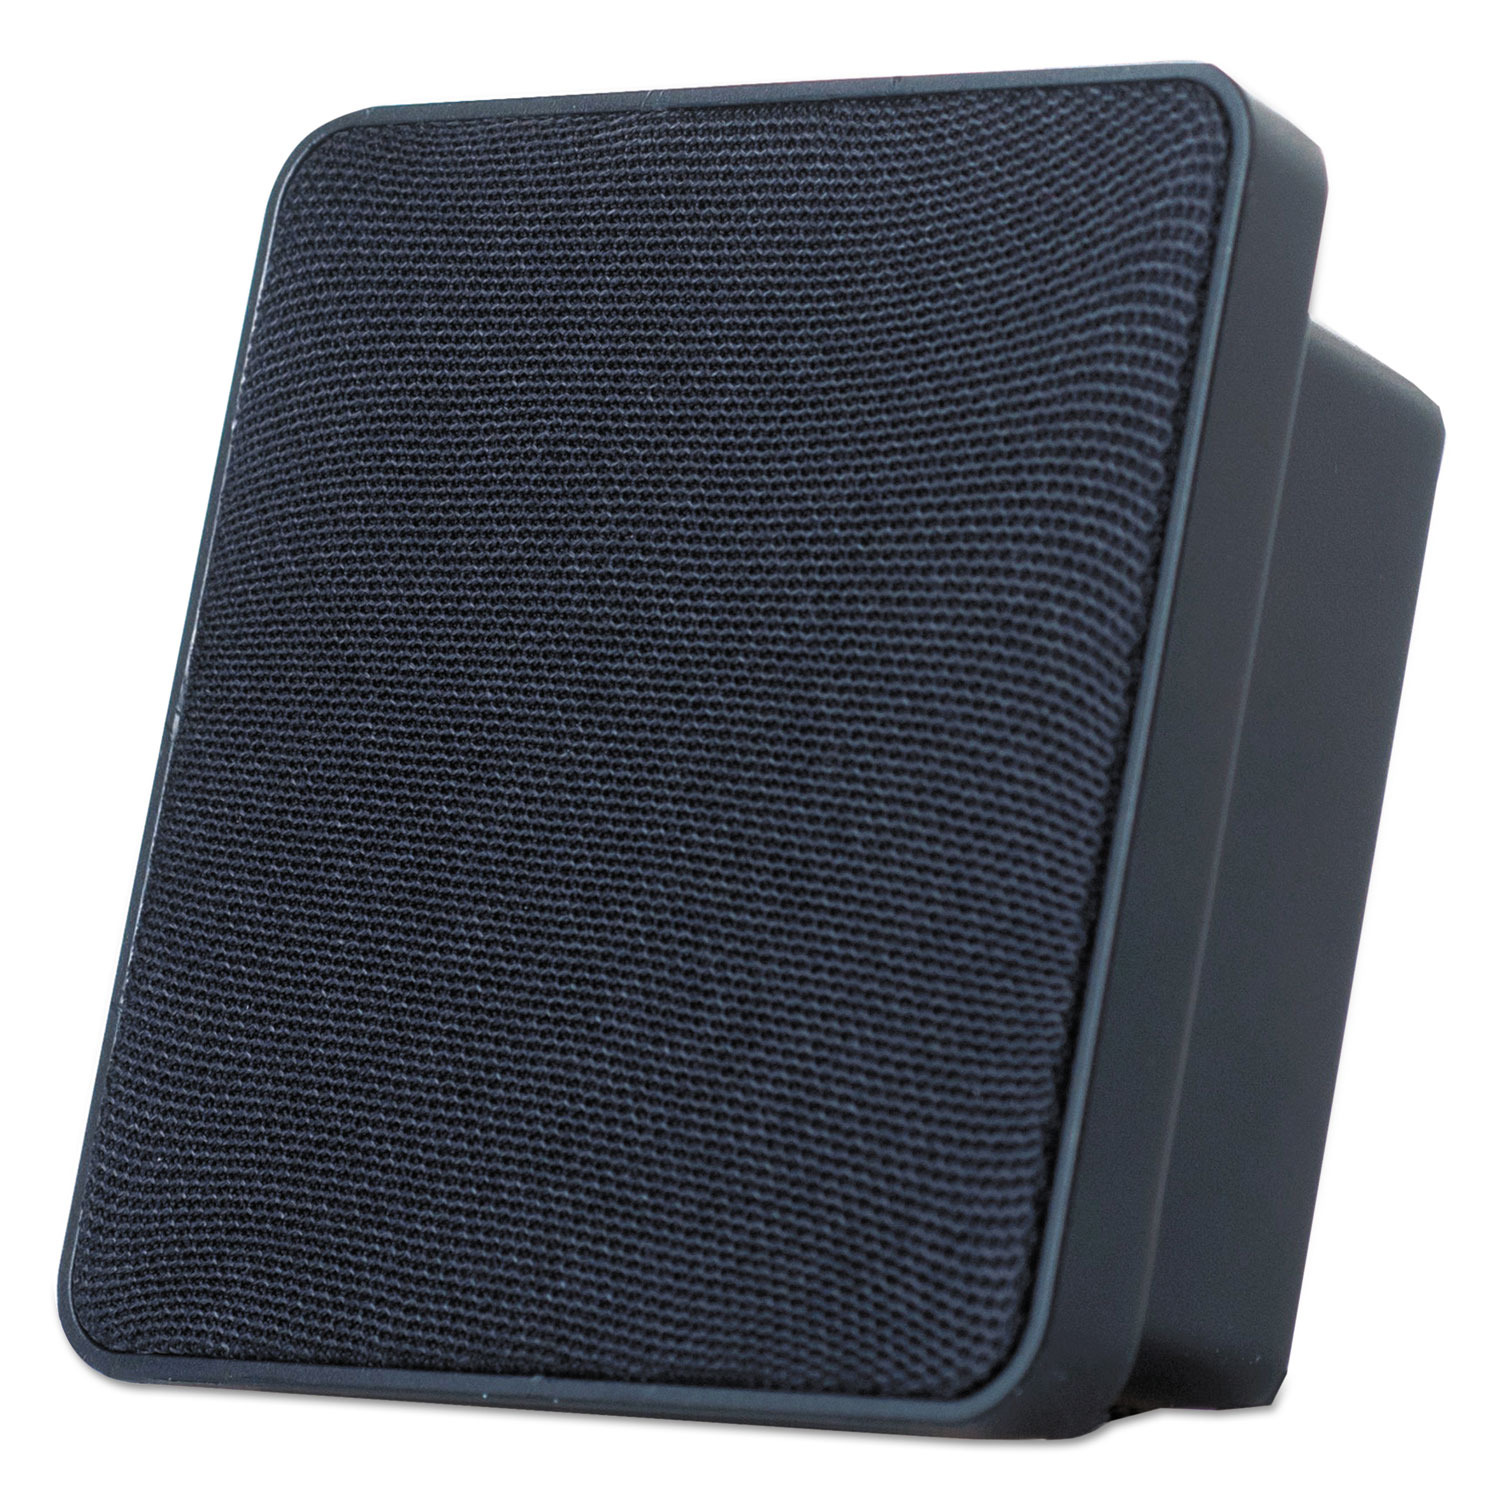 Flathead Bluetooth Speaker, Black